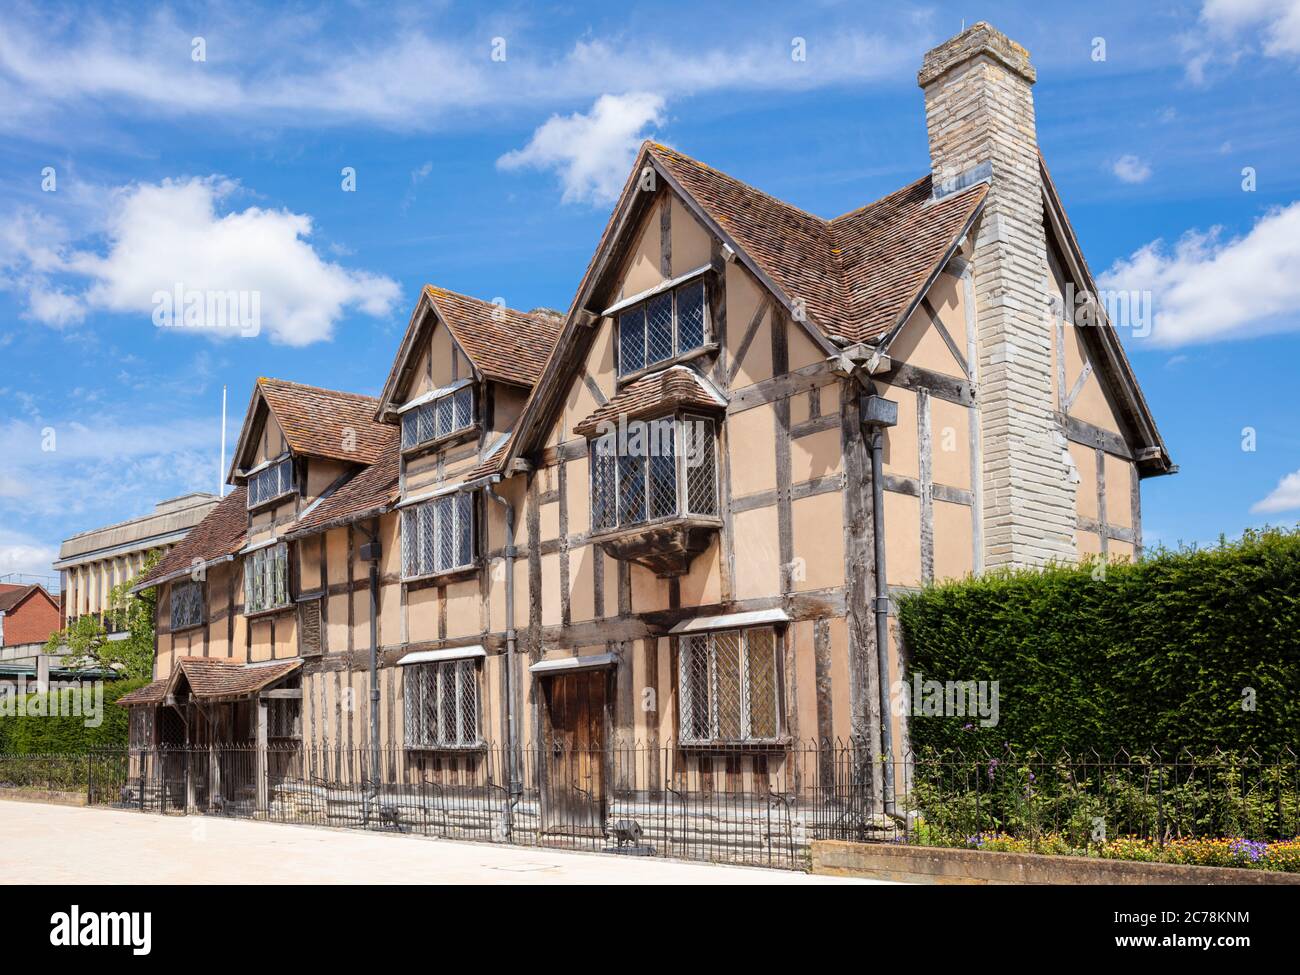 Luogo di nascita di William Shakespeare, Stratford-upon-Avon, il luogo di nascita di William Shakespeare, Stratford upon Avon Warwickshire Inghilterra GB Europa Foto Stock